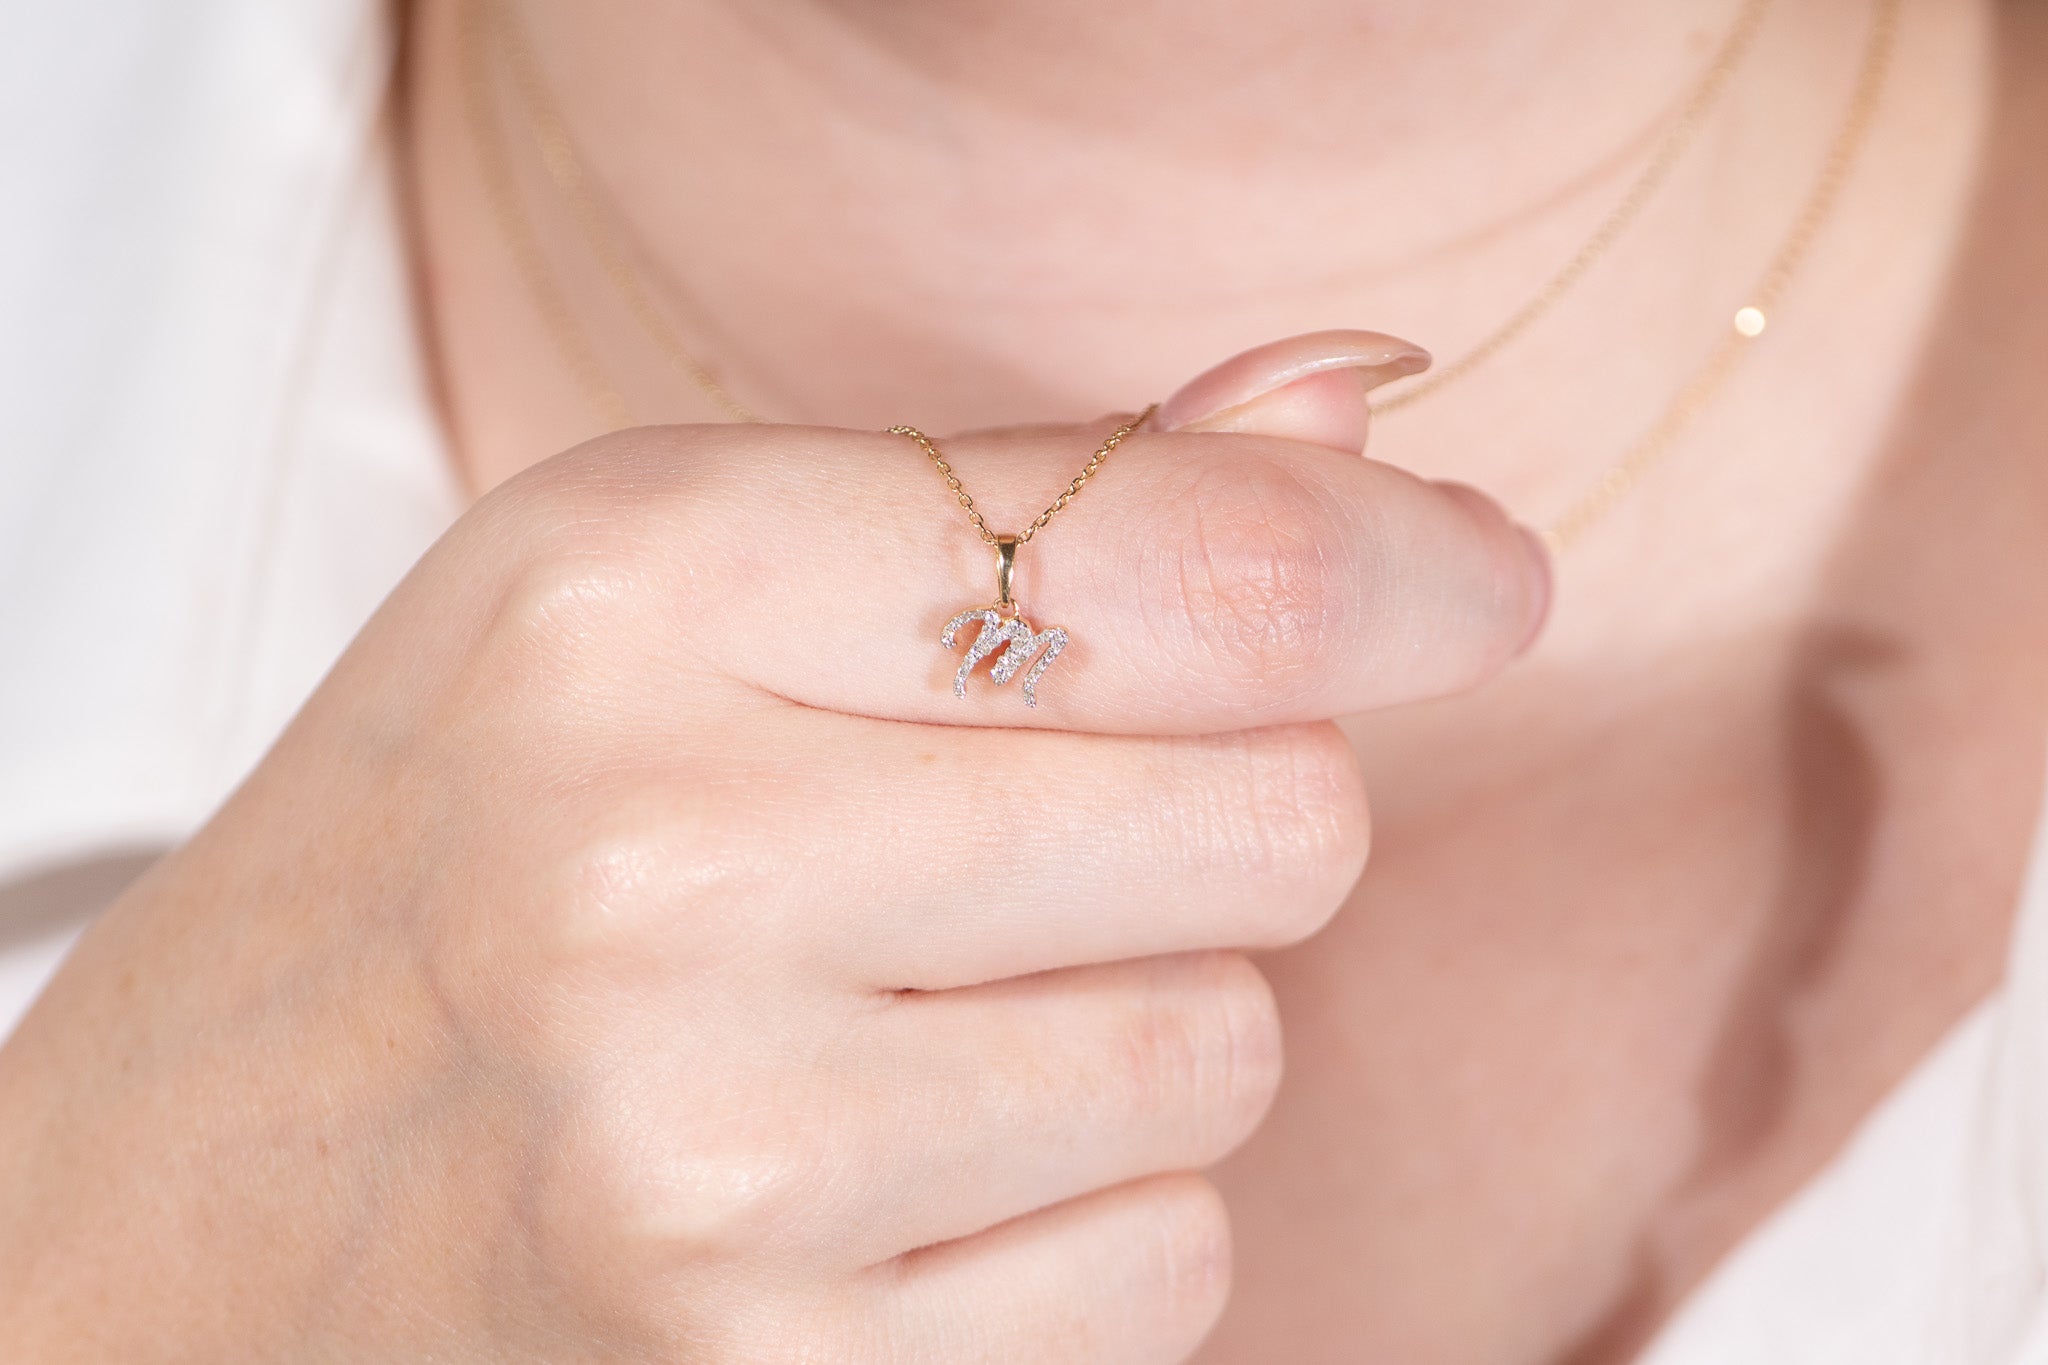 Cursive Diamond Initial Necklace - M Necklaces Estella Collection #product_description# 18557 14k Diamond Gemstone #tag4# #tag5# #tag6# #tag7# #tag8# #tag9# #tag10# 14k Yellow Gold